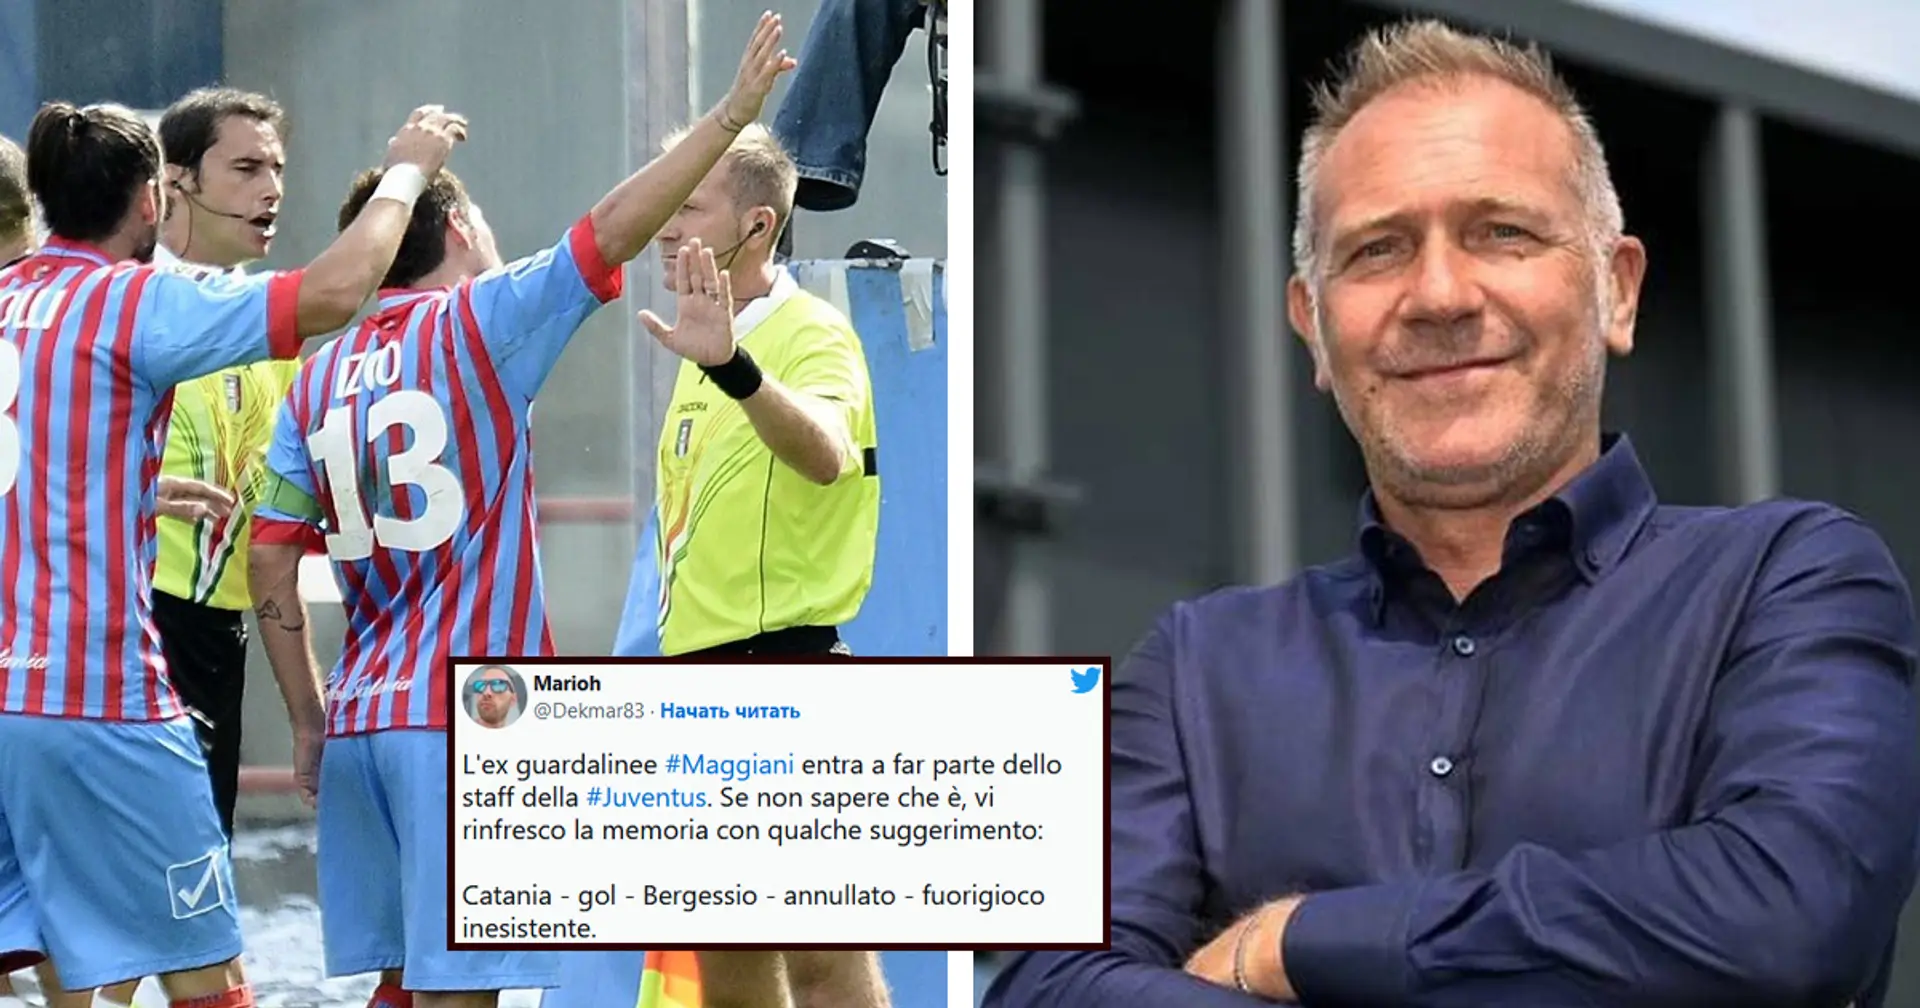 L'ex guardalinee Maggiani ora lavora nella Juve, tifosi senza parole: "Ecco gli agganci giusti, vero FIGC?"